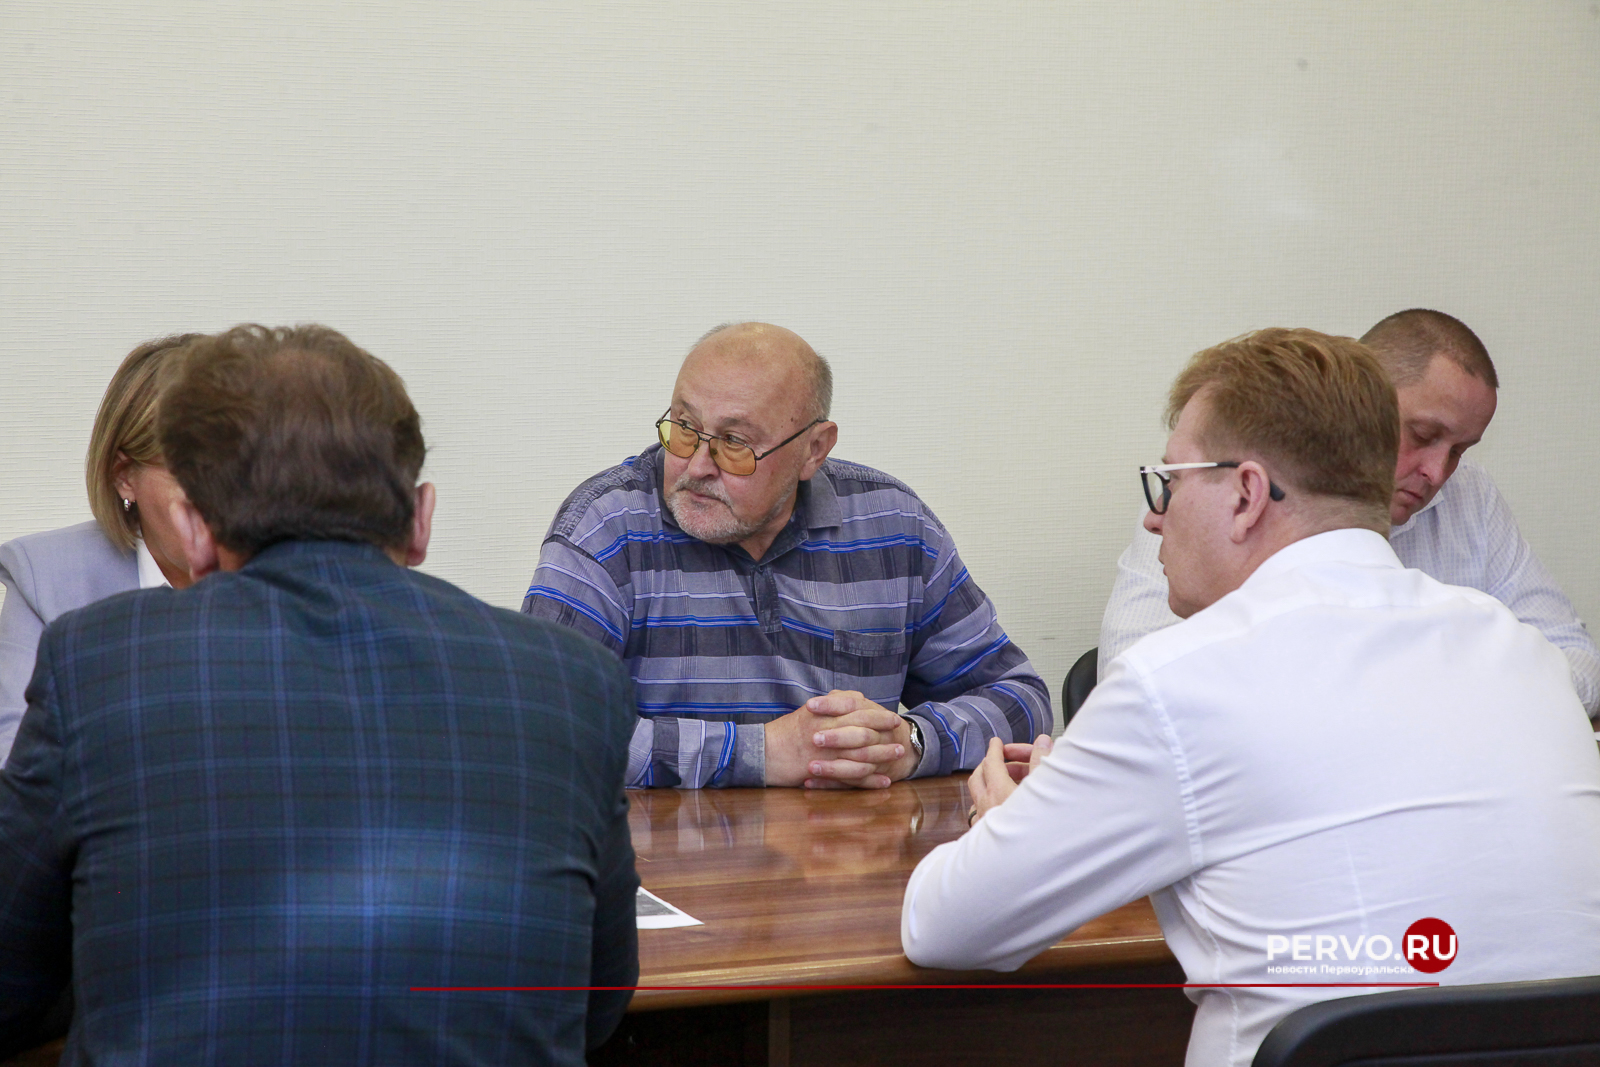 Игорь Кабец провел совещание со специалистами в области гидрологии по вопросам качества водоснабжения в Первоуральске